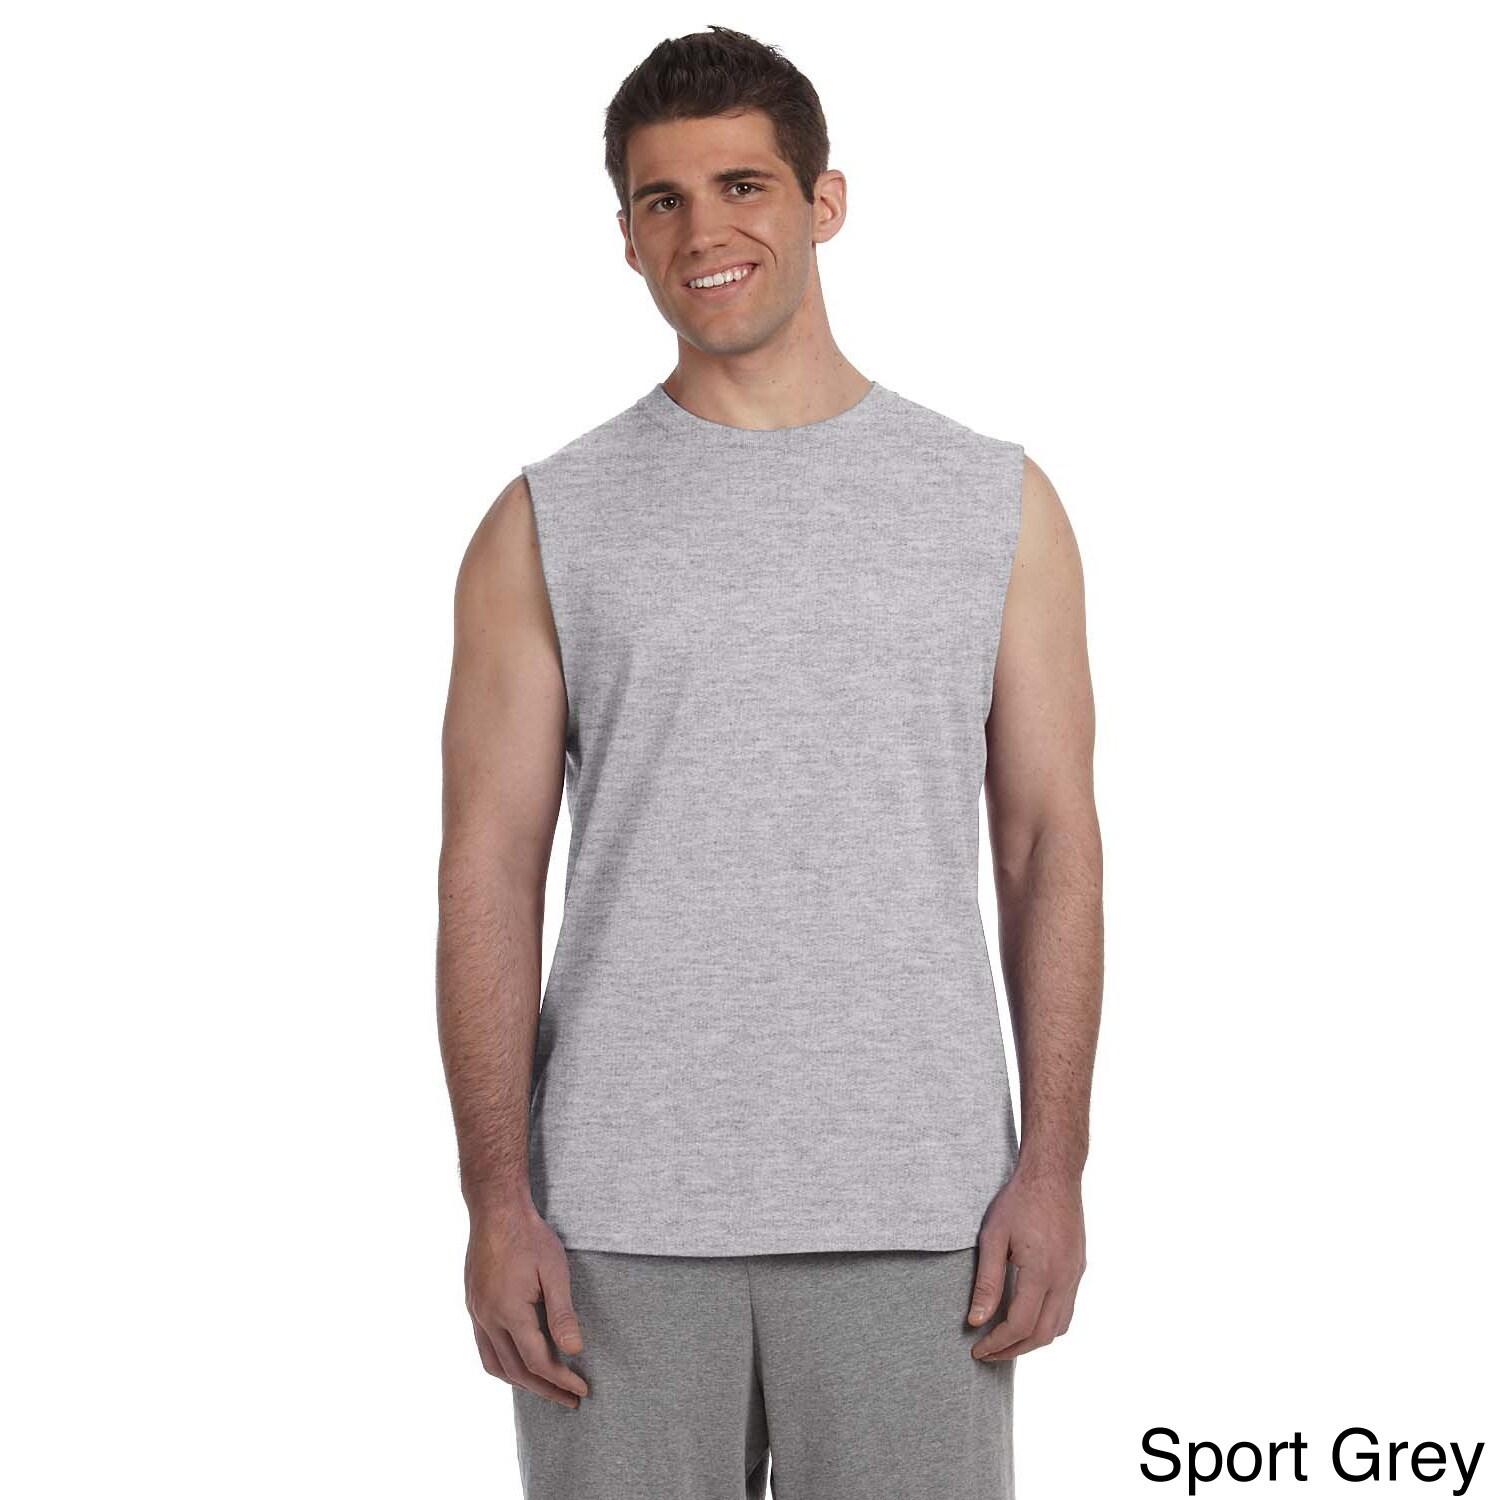 Gildan Mens Ultra Cotton Sleeveless T shirt